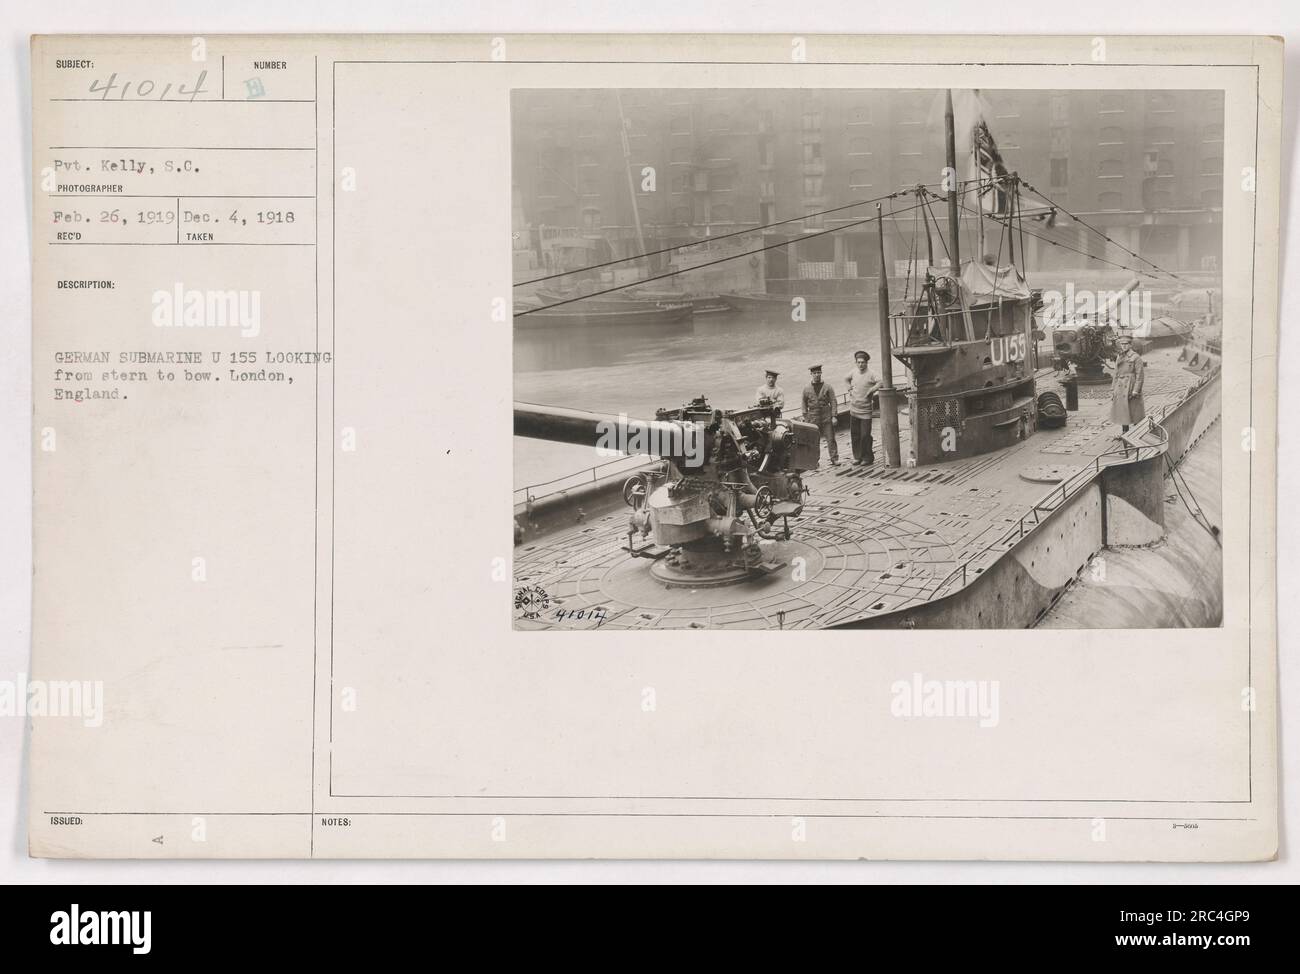 Questa foto, scattata da Pvt. Kelly il 26 febbraio 1919, mostra una vista dal ponte di una nave che guarda verso la prua. La posizione è Londra, Inghilterra. La nave a fuoco è un sottomarino tedesco U 155. Questa immagine è stata catturata durante la prima guerra mondiale ed è significativa nella documentazione delle attività militari. Foto Stock